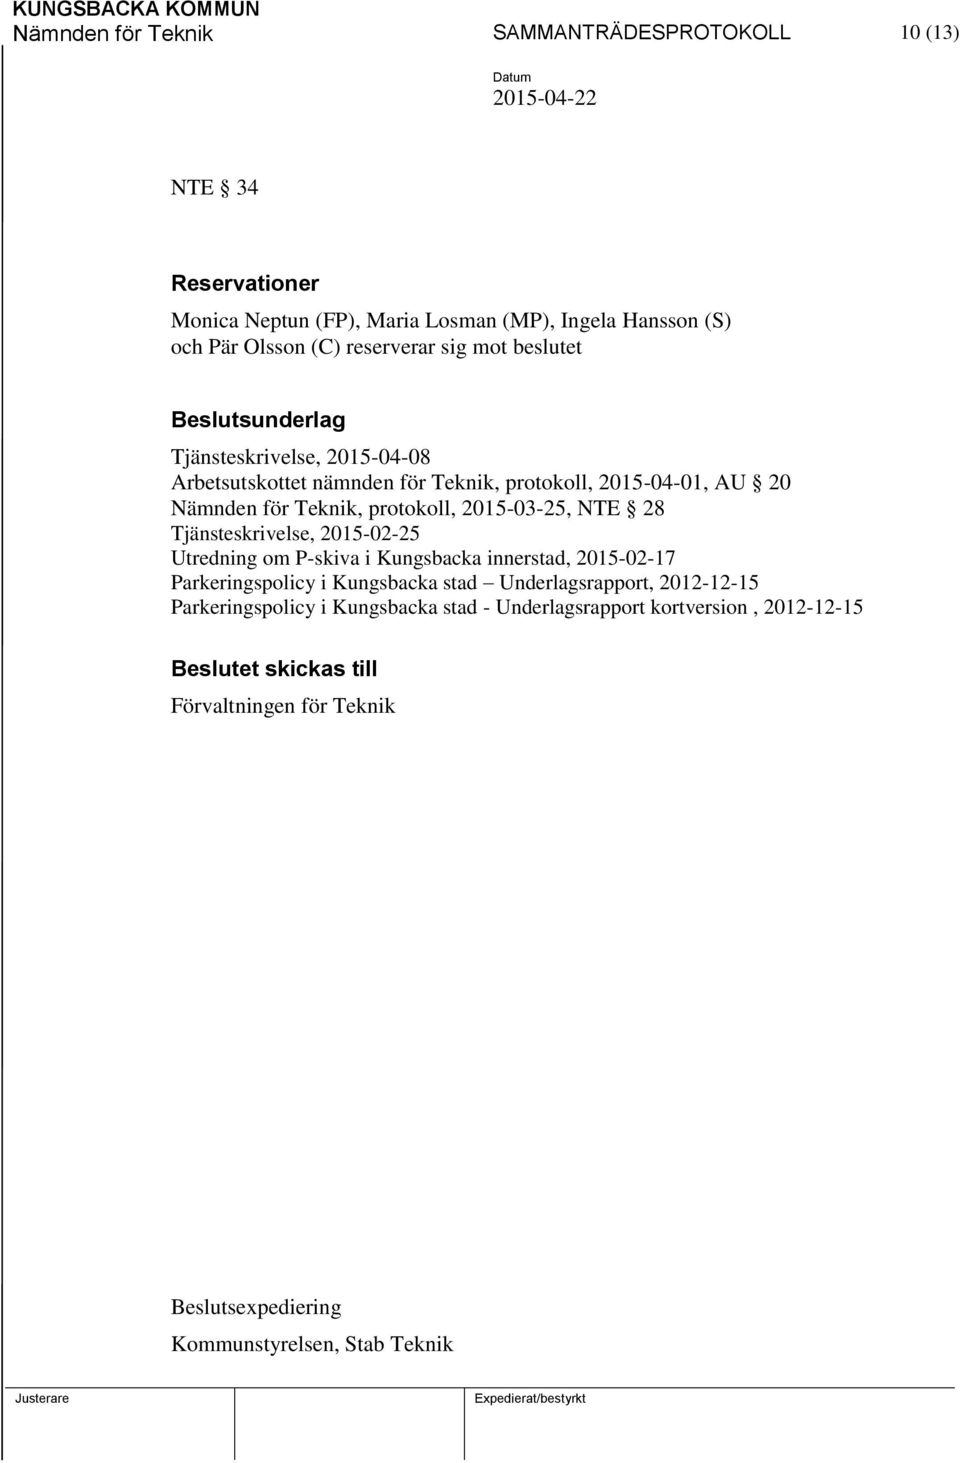 2015-03-25, NTE 28 Tjänsteskrivelse, 2015-02-25 Utredning om P-skiva i Kungsbacka innerstad, 2015-02-17 Parkeringspolicy i Kungsbacka stad Underlagsrapport,